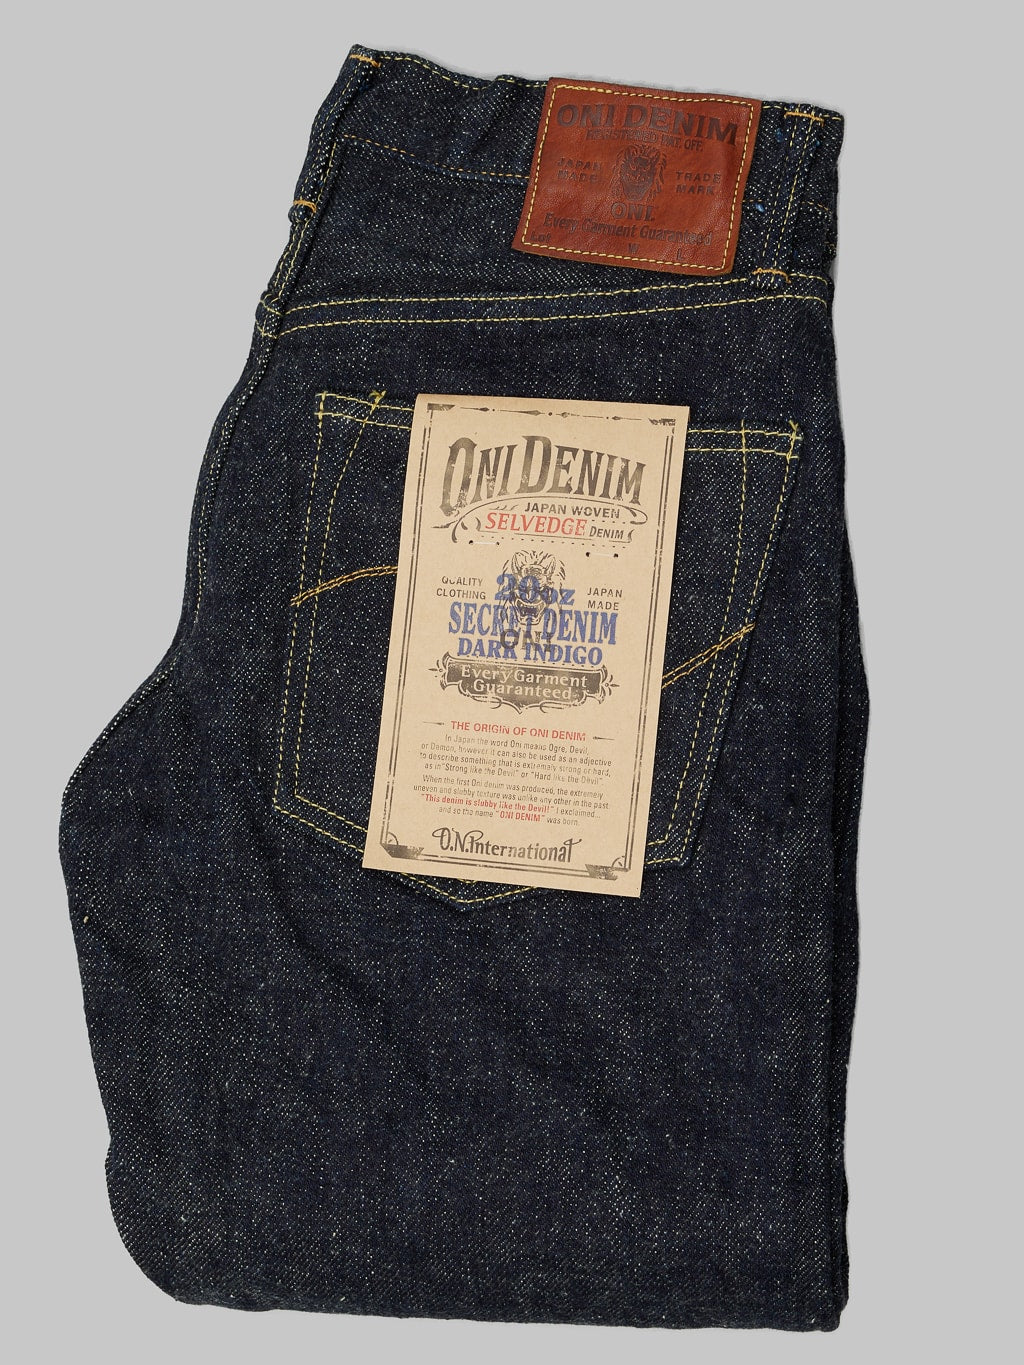 ONI Denim 246DIZR Dark Indigo Secret Denim Jeans  limited quantities